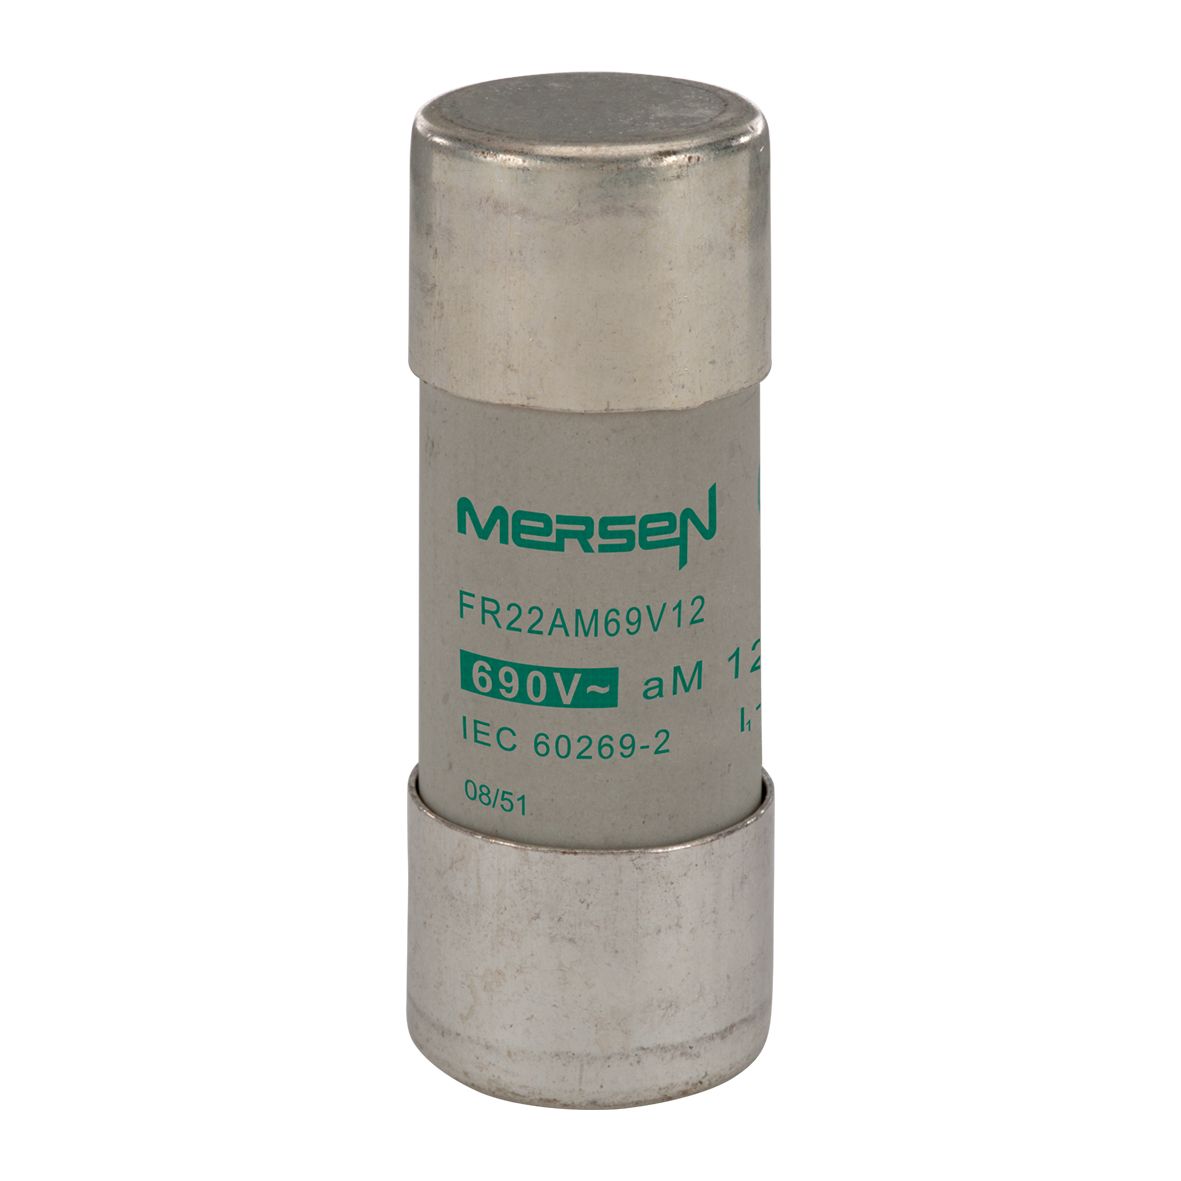 N201308 - Cylindrical fuse-link aM 690VAC 22.2x58, 8A